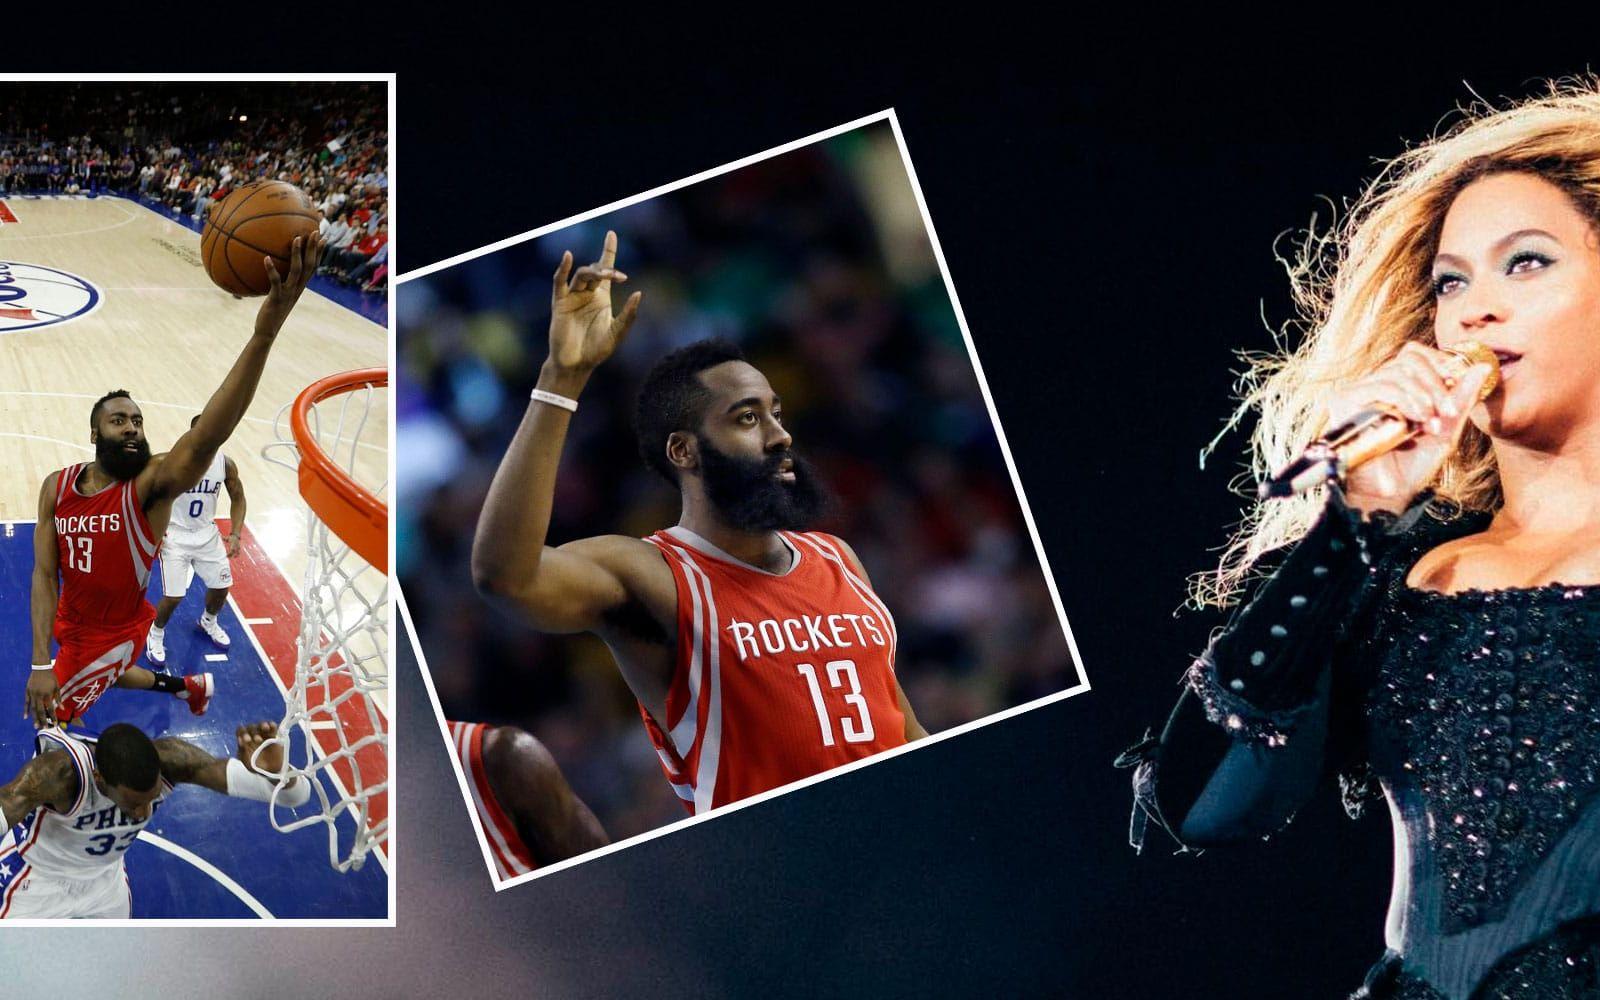 24. Beyoncé Knowles. Född i Houson, Texas, och håller stenhårt på stadens lag i NBA – Rockets. Hon softar gärna i ett matchlinne med favoritspelaren James Hardens namn på ryggen. Foto: TT